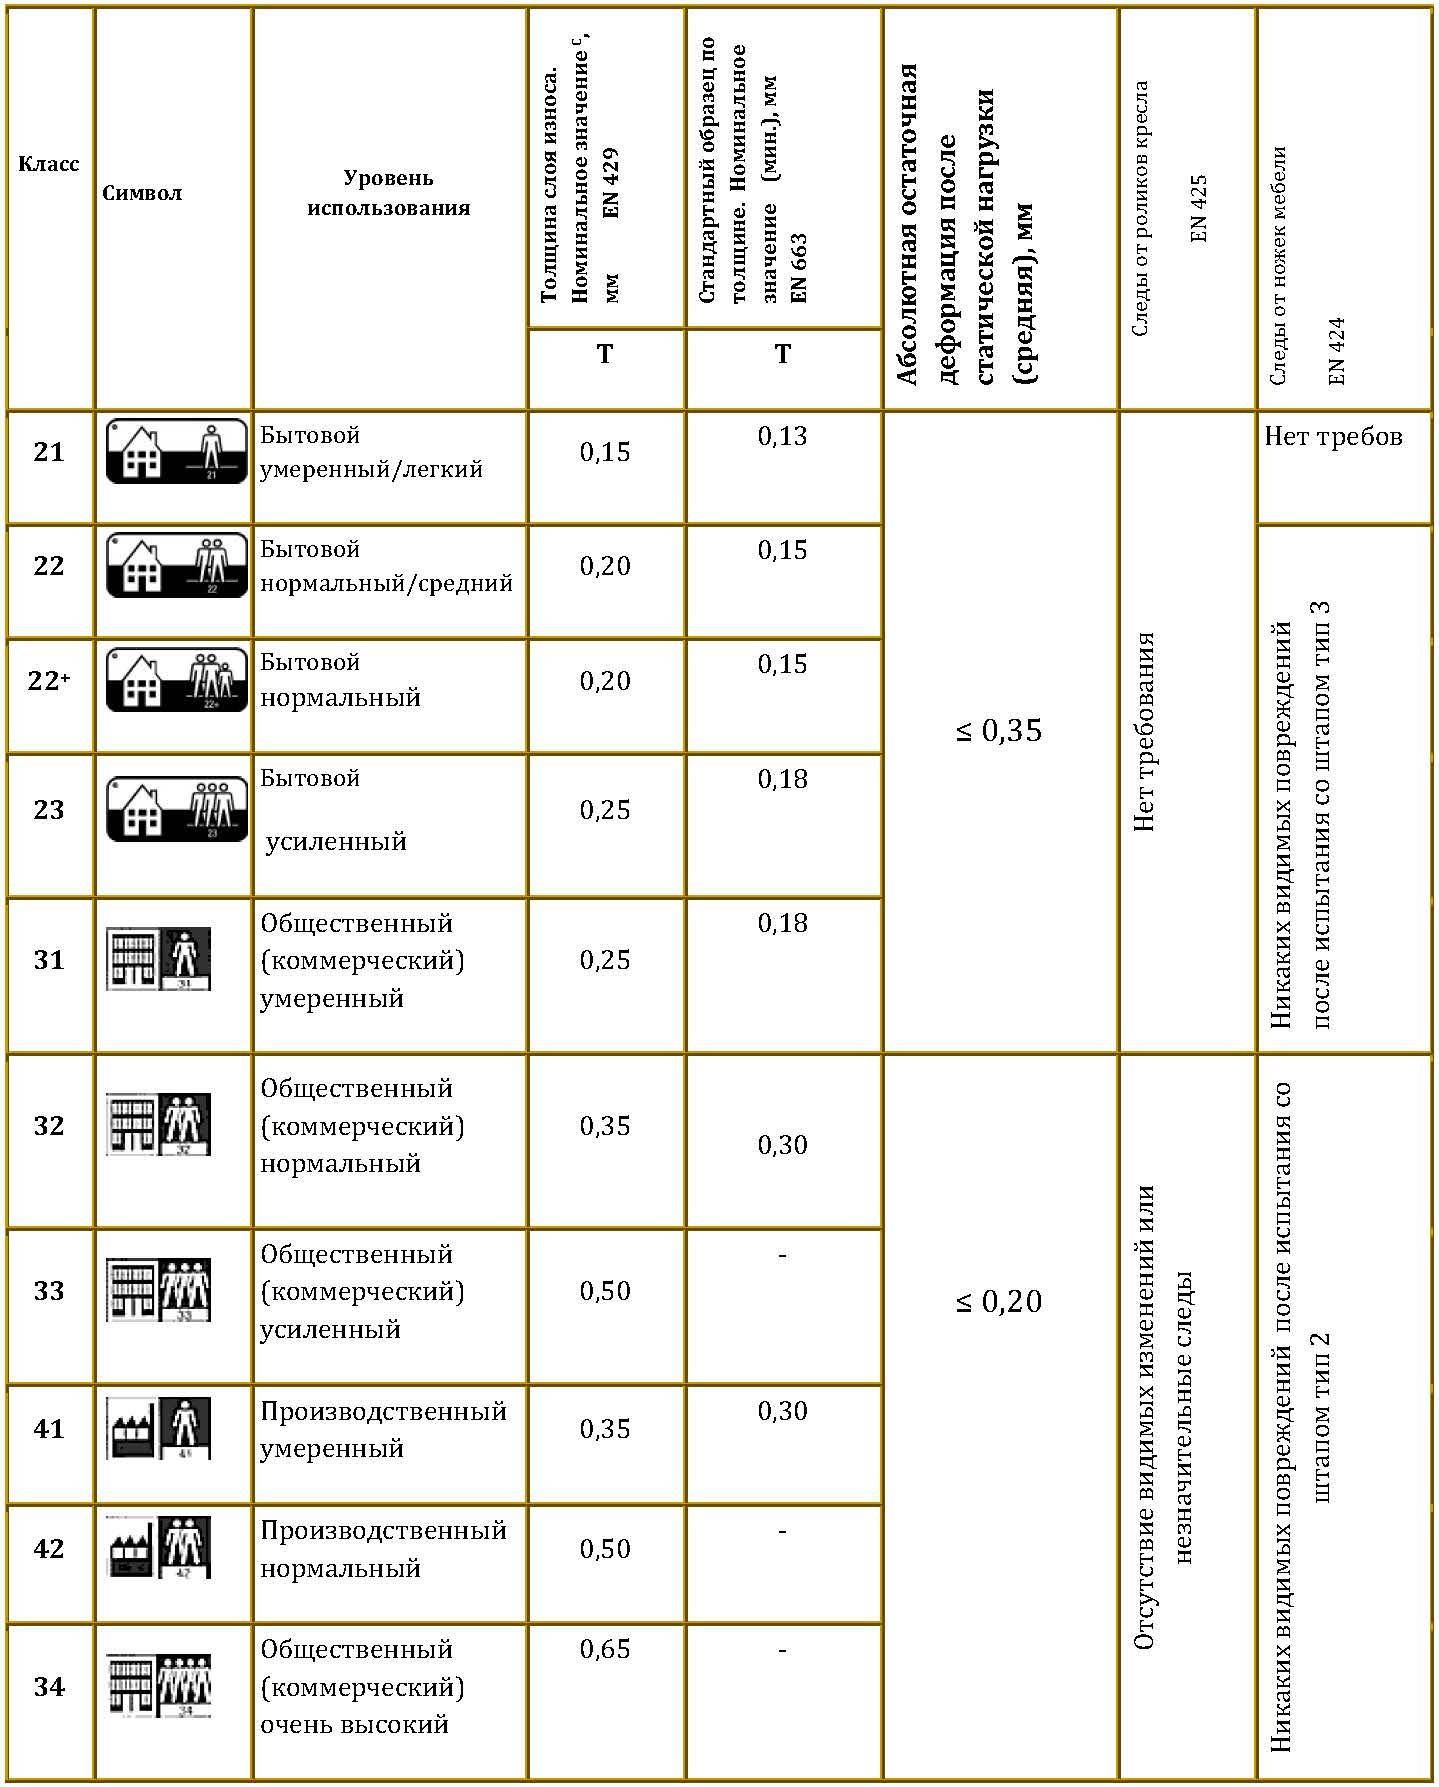 Класс износостойкости линолеума: классификация и области применения